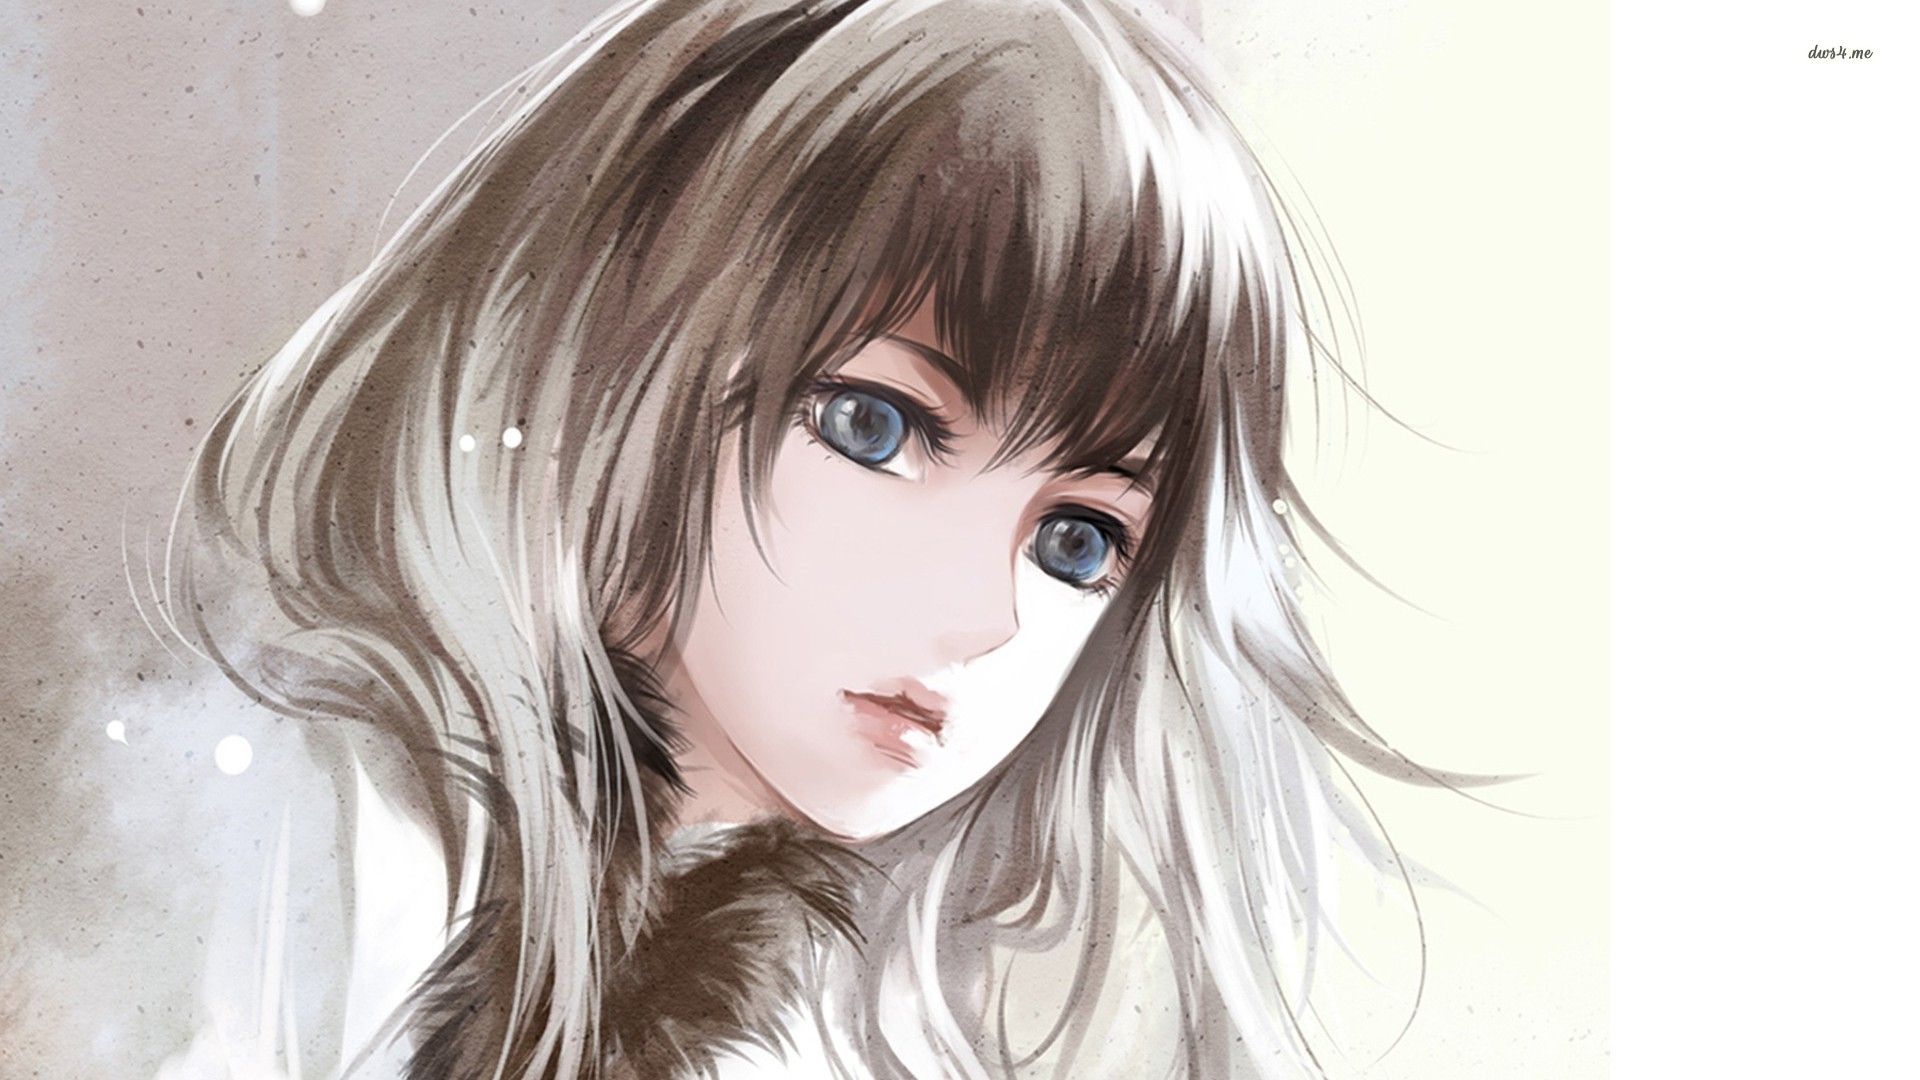 Blue eyed anime girl wallpaper - Anime wallpapers -